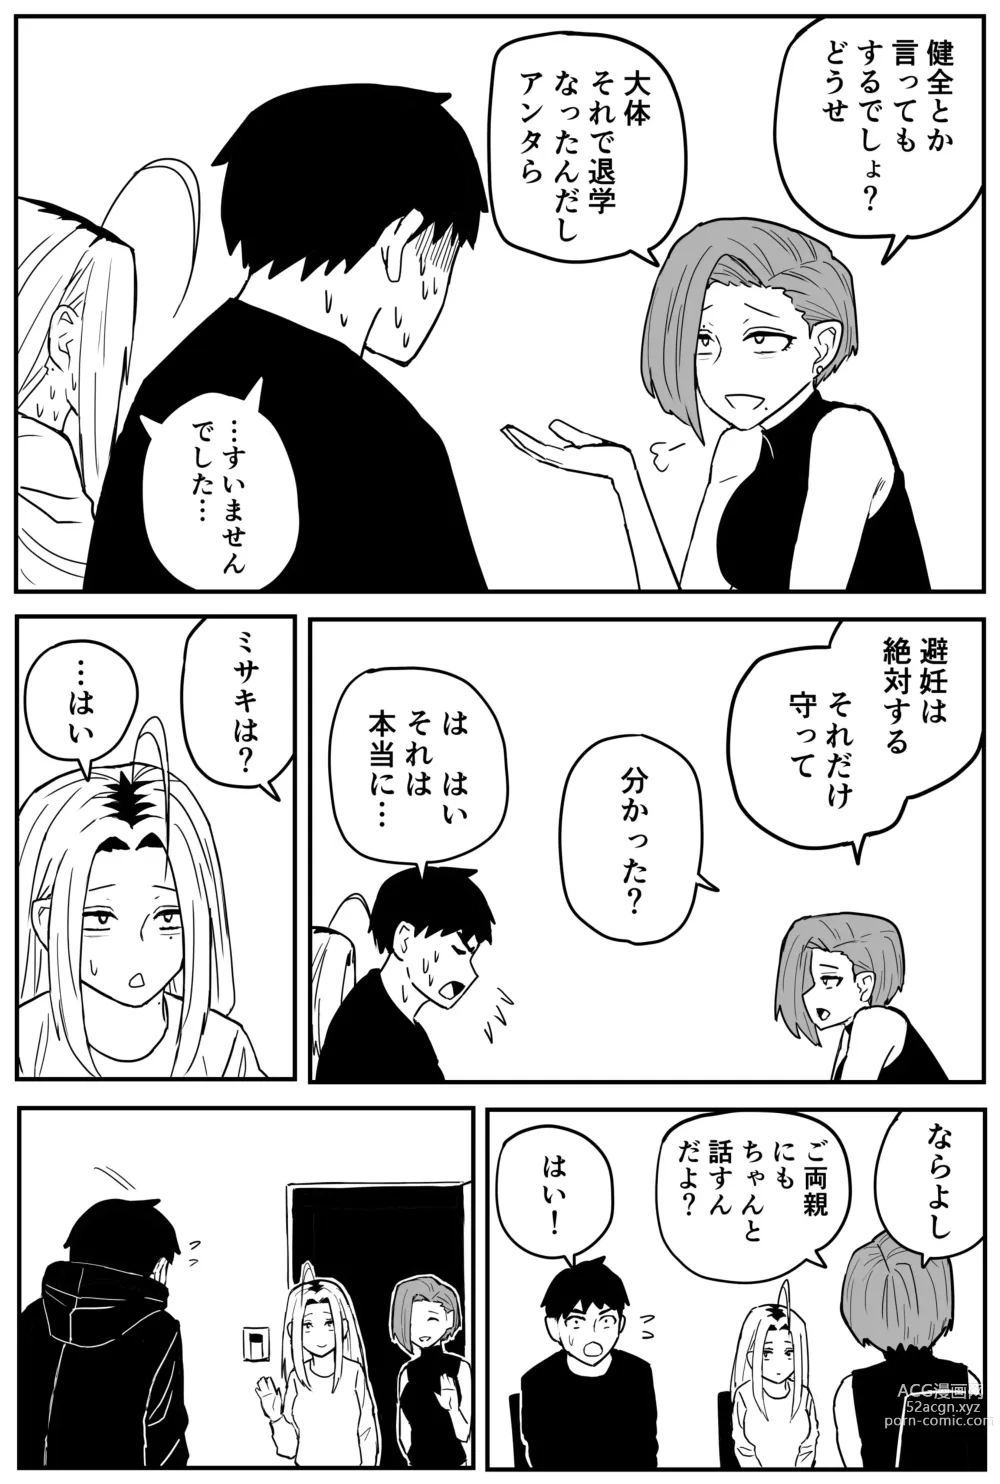 Page 337 of doujinshi Gal JK Ero Manga Ch.1-27